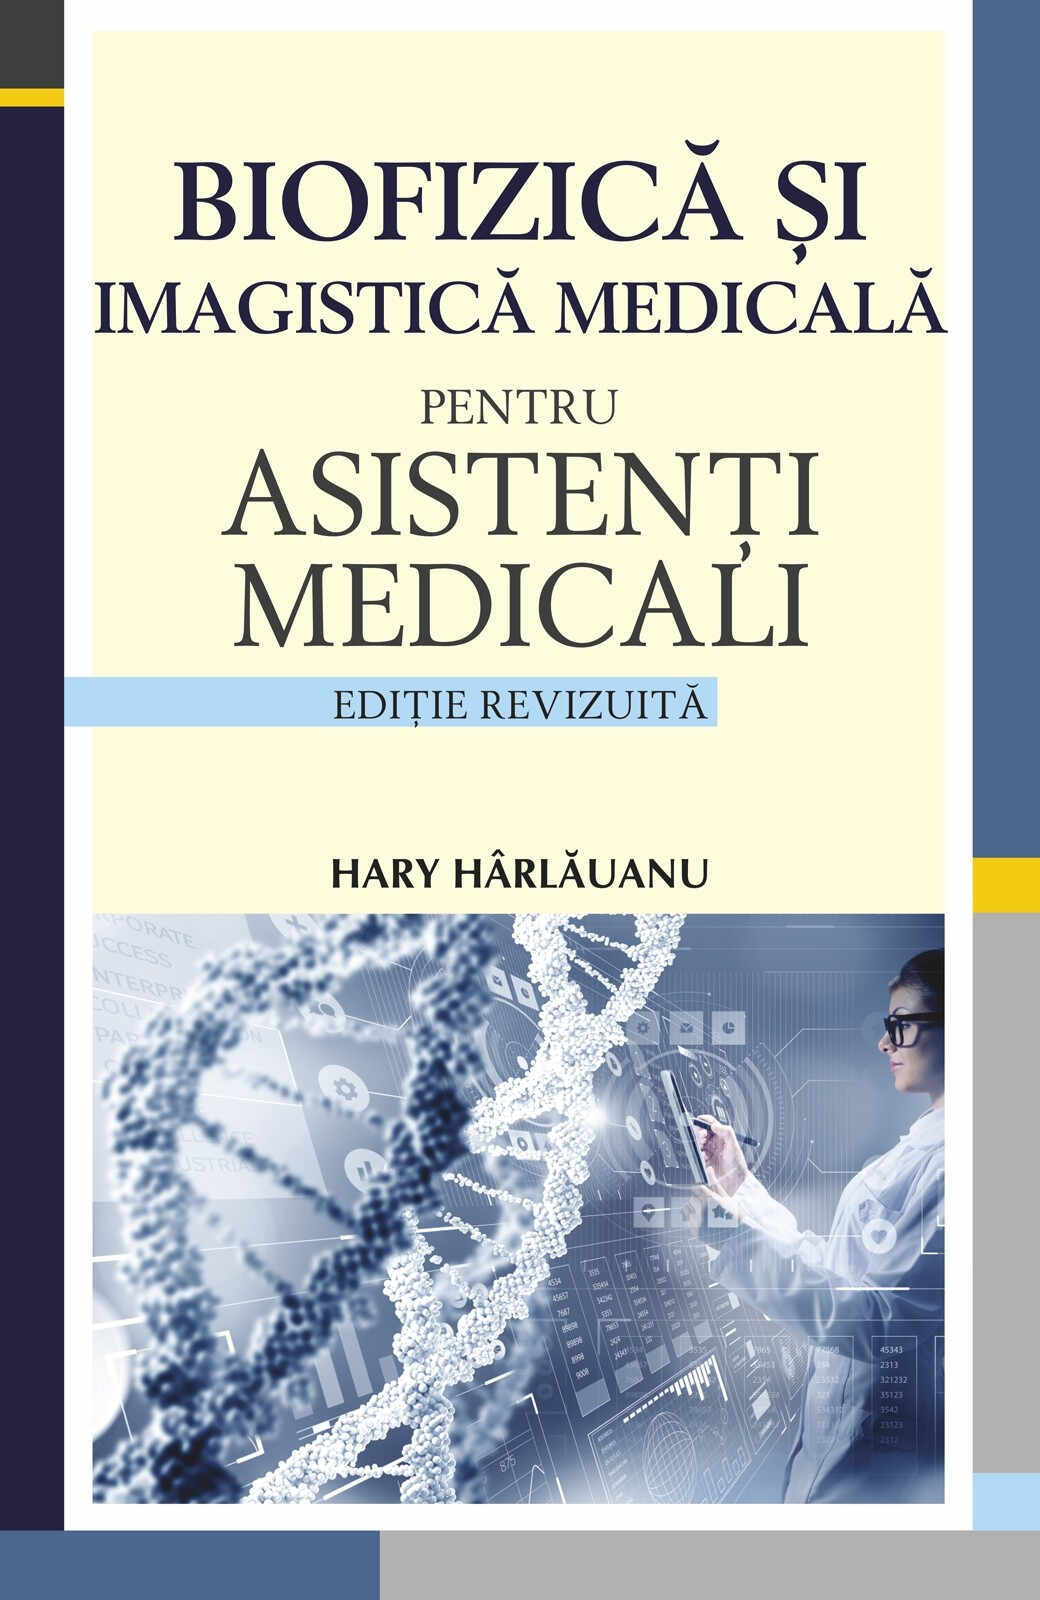 Biofizica si imagistica medicala pentru asistenti medicali | Hary Harlauanu